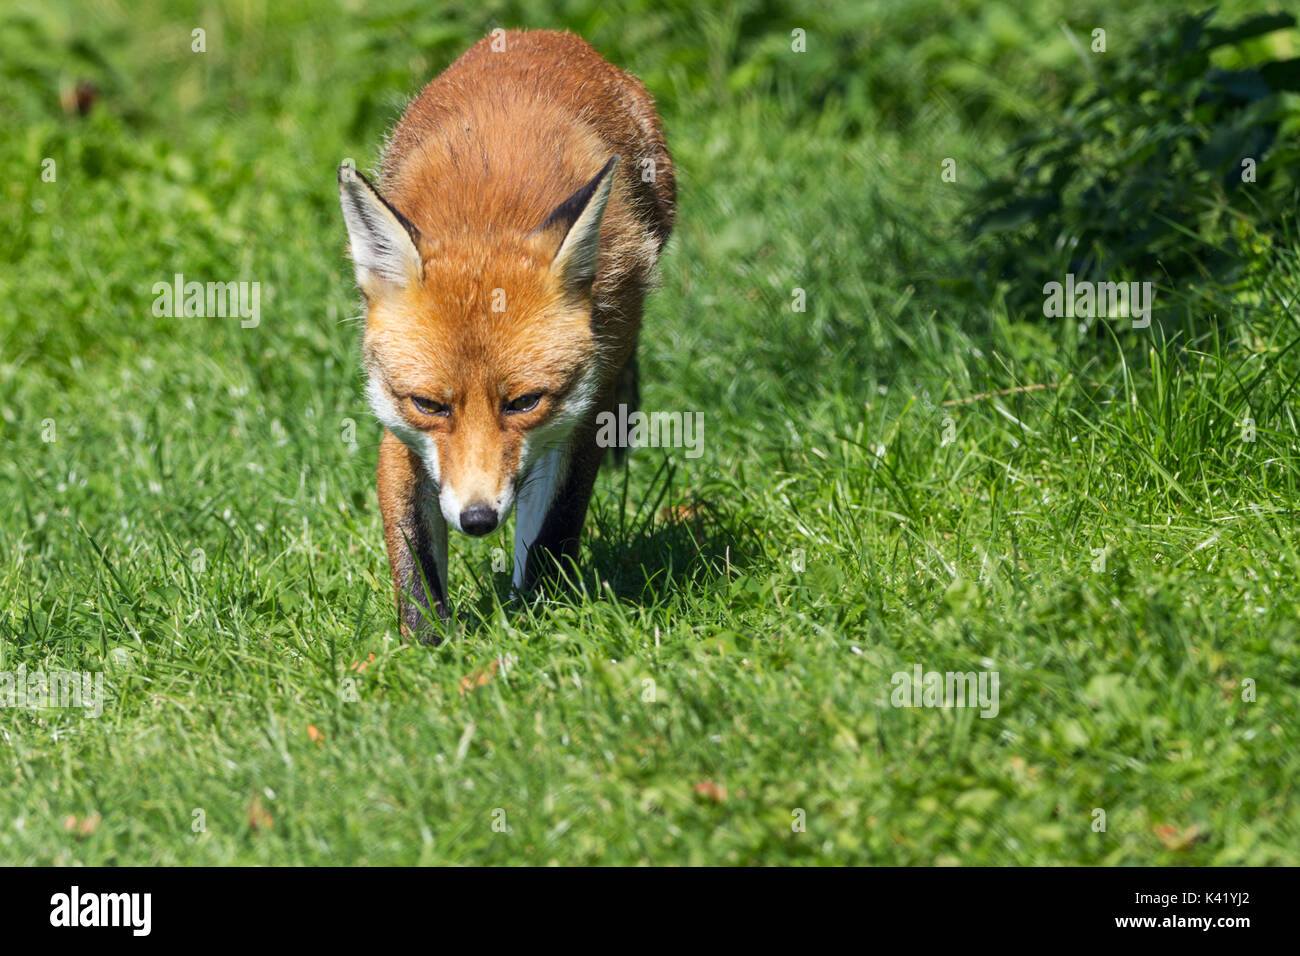 Fox Vulpes vulpes cane come mammifero rilassante in alcune buone condizioni atmosferiche. Rosso arancione la pelliccia e coda folta. Questo fox è presso il British Centro faunistico Surrey UK. Foto Stock